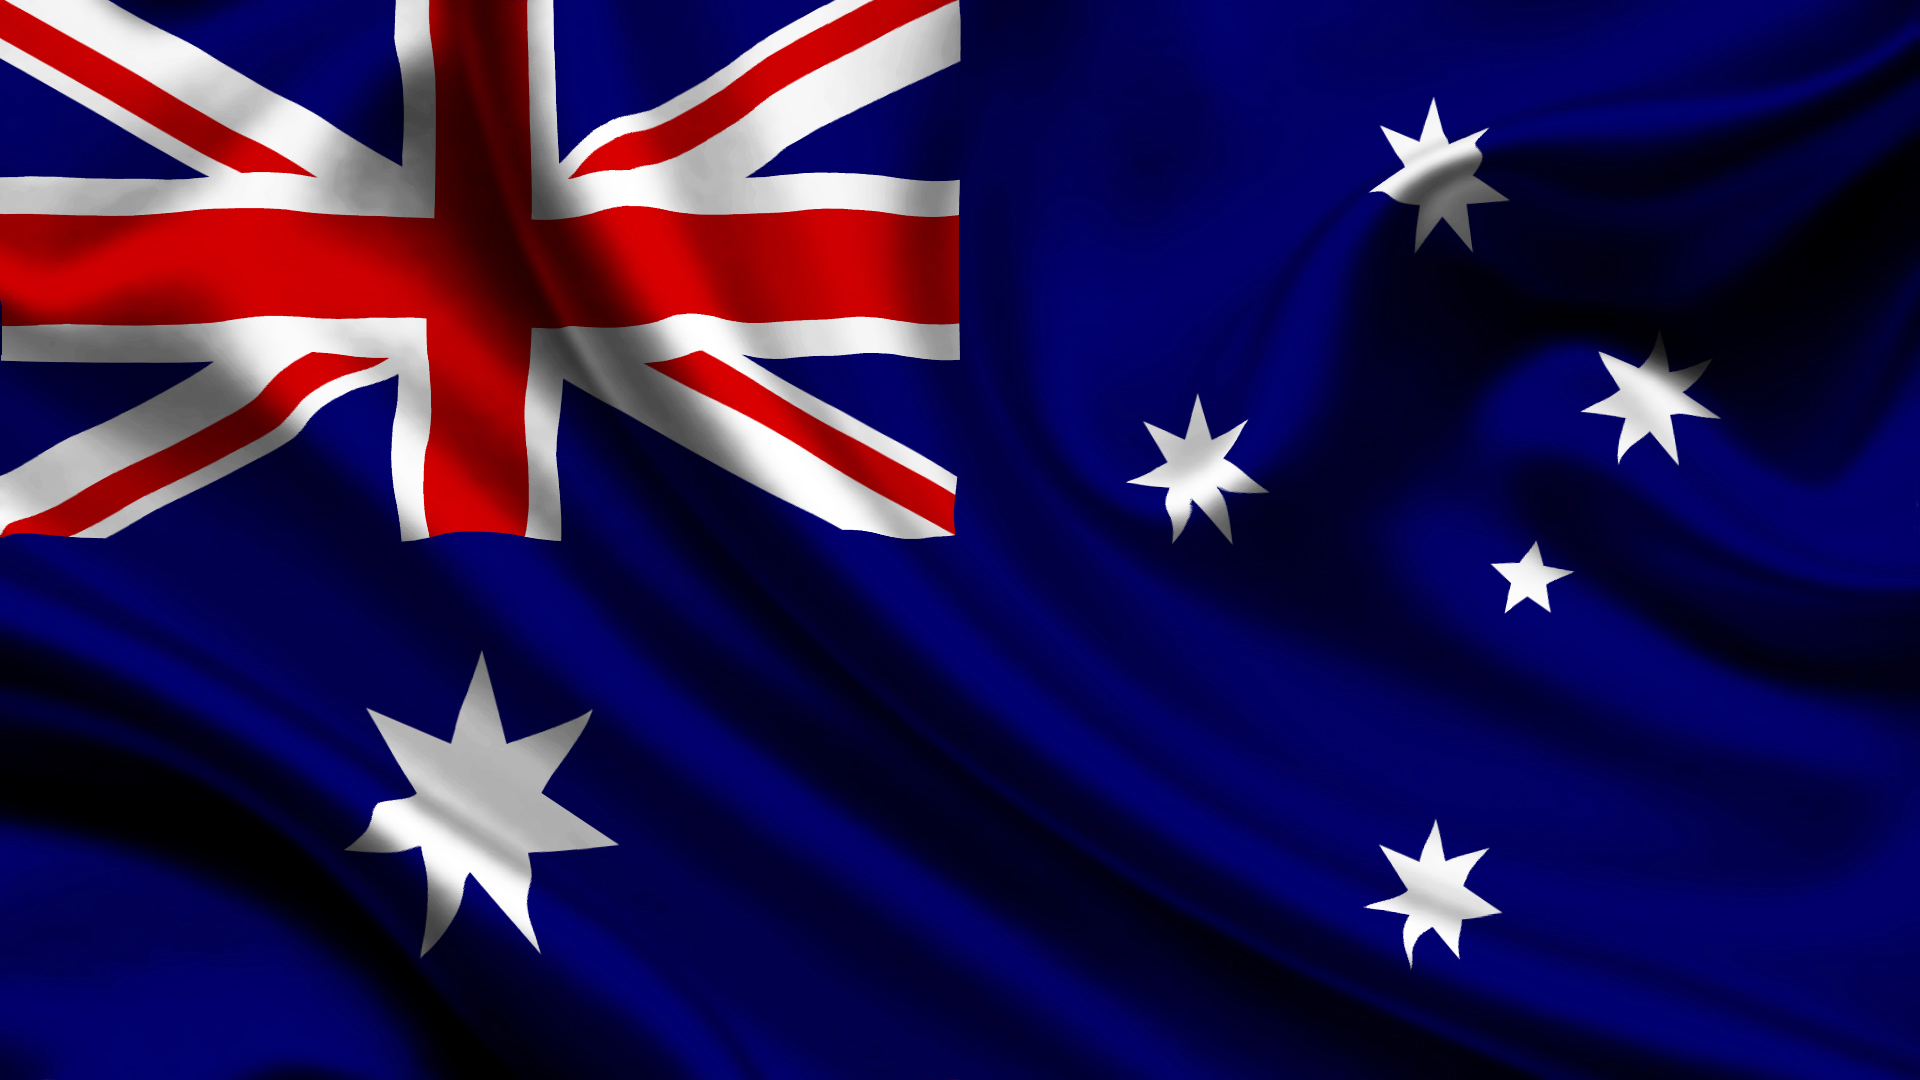 オーストラリアのiphoneの壁紙,国旗,アメリカ合衆国の旗,コバルトブルー,エレクトリックブルー,空